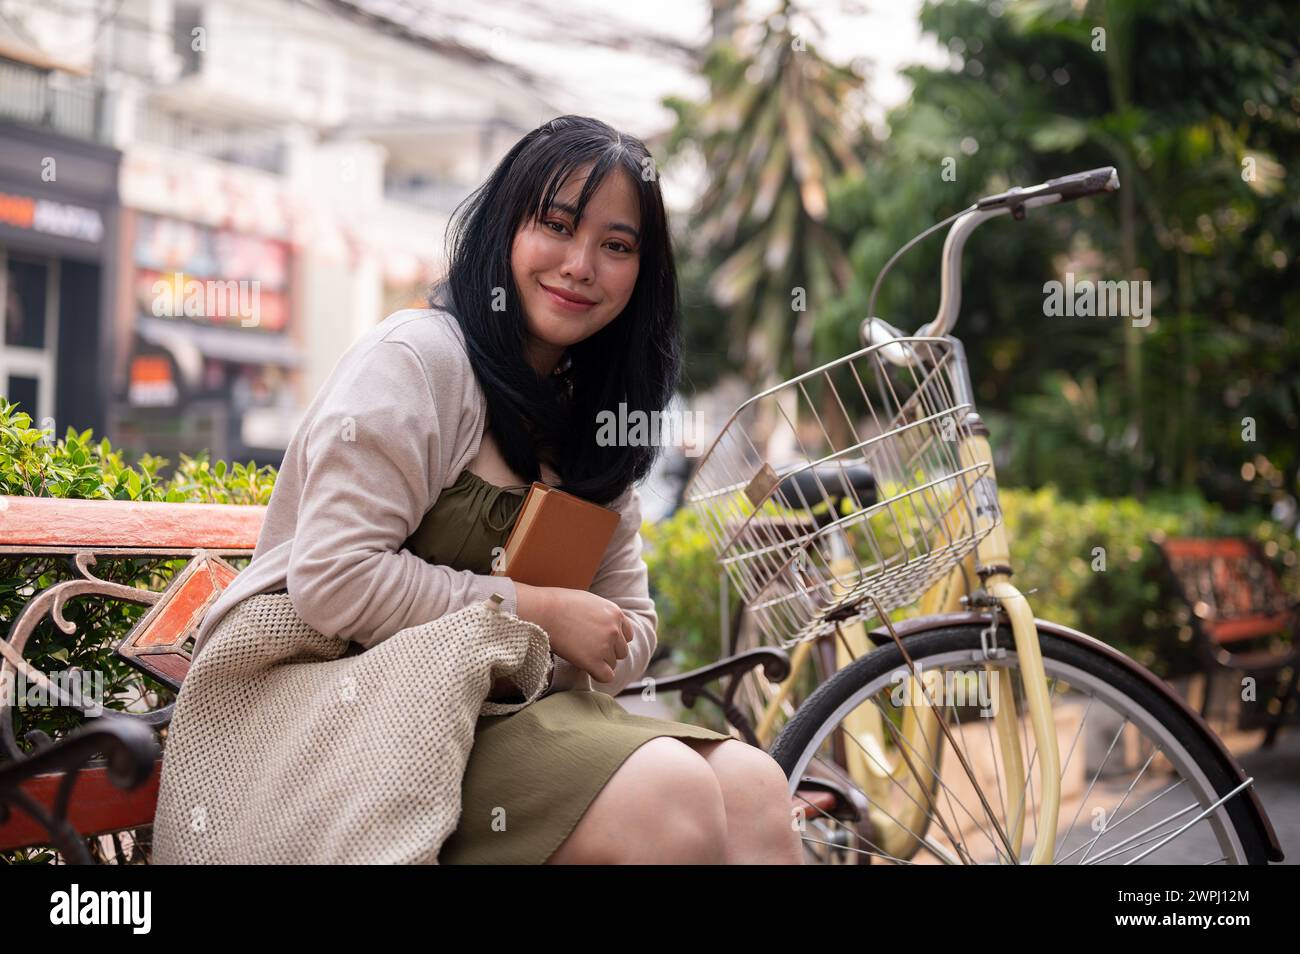 Una giovane donna asiatica attraente e felice è seduta su una panchina all'aperto in città con la sua bici, rilassandosi in un parco pubblico cittadino. persone e stile di vita Foto Stock